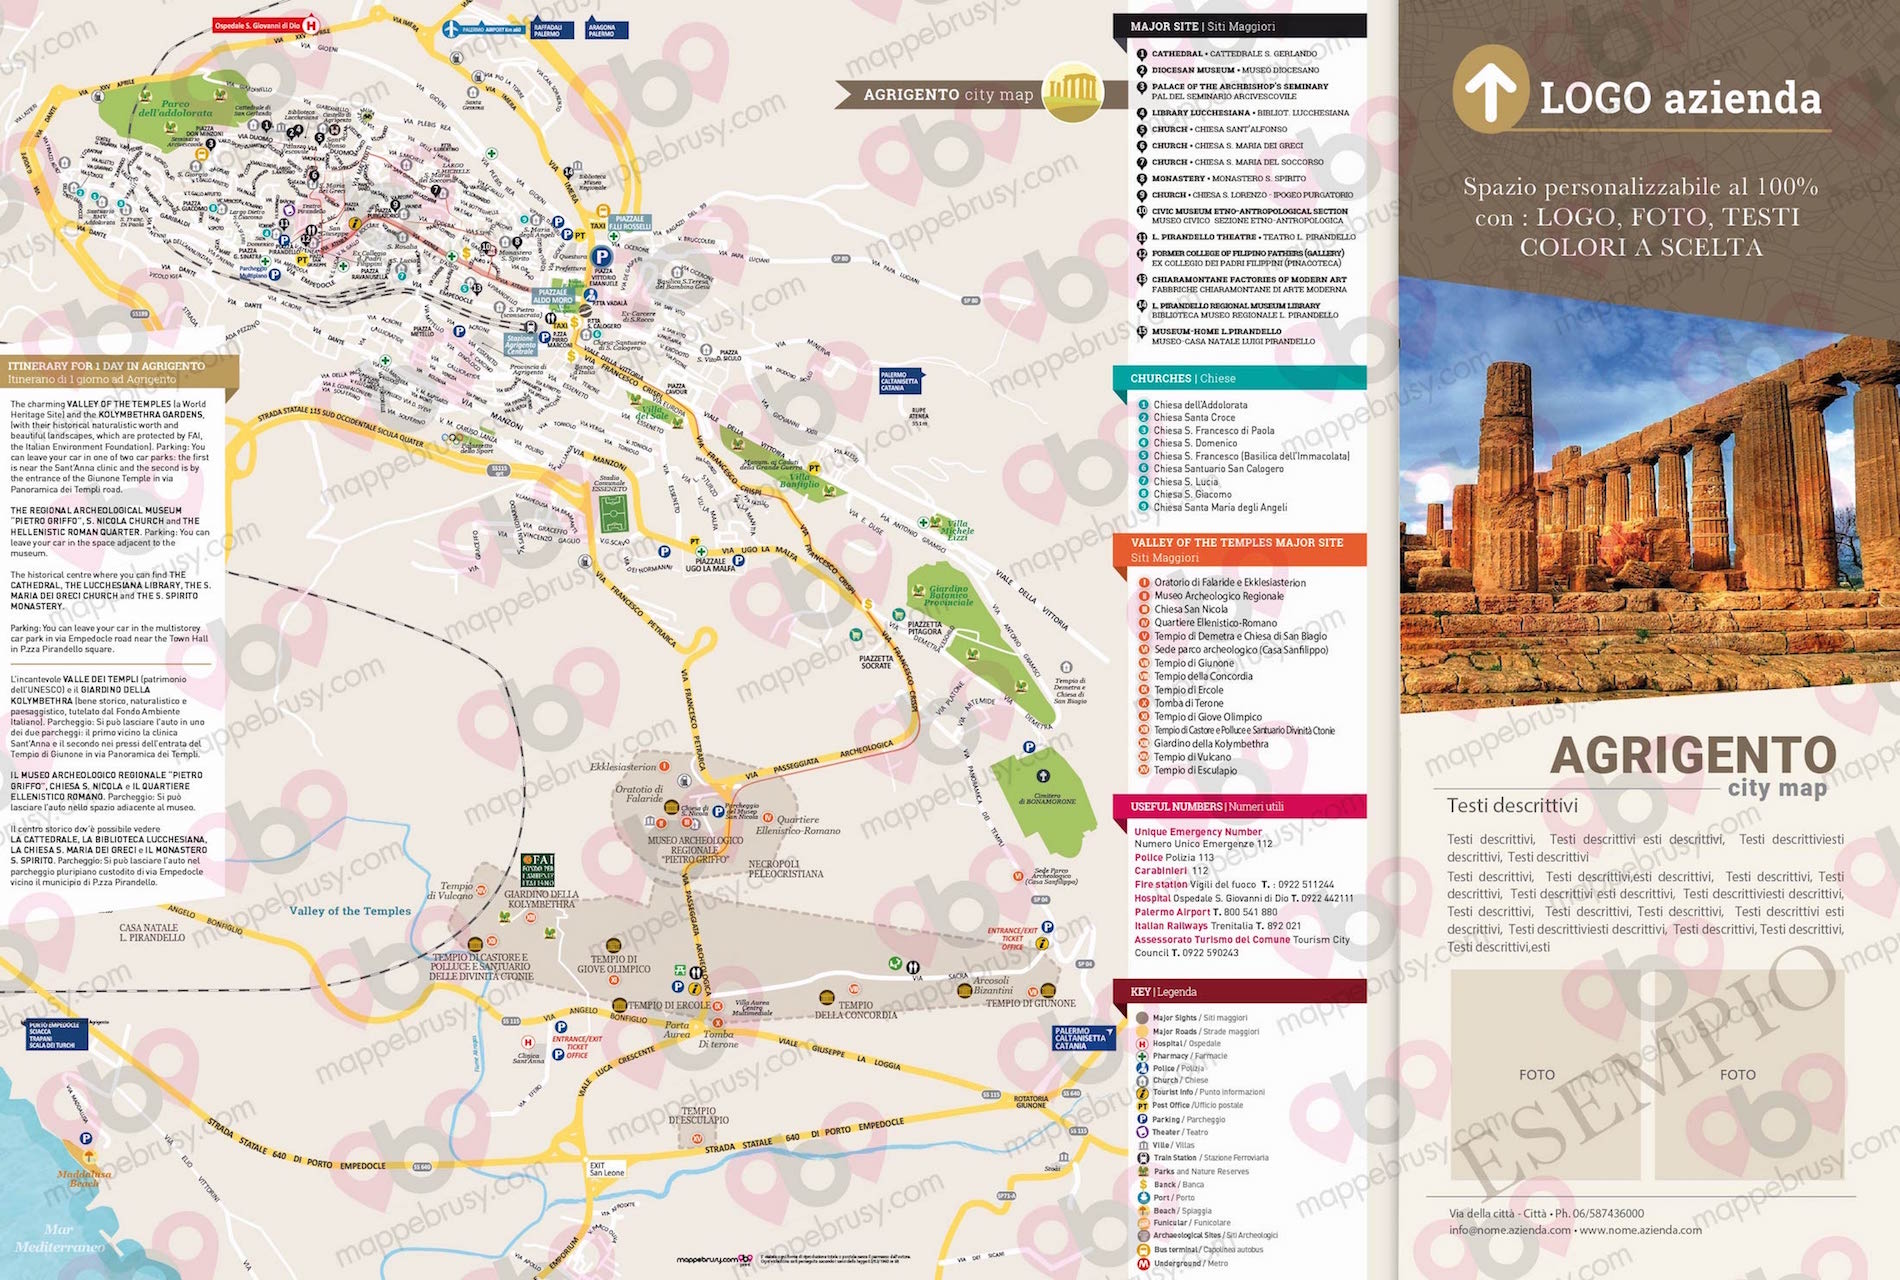 Mappa di Agrigento - Agrigento city map - mappa Agrigento - mappa personalizzata di Agrigento - mappa tursitica di Agrigento